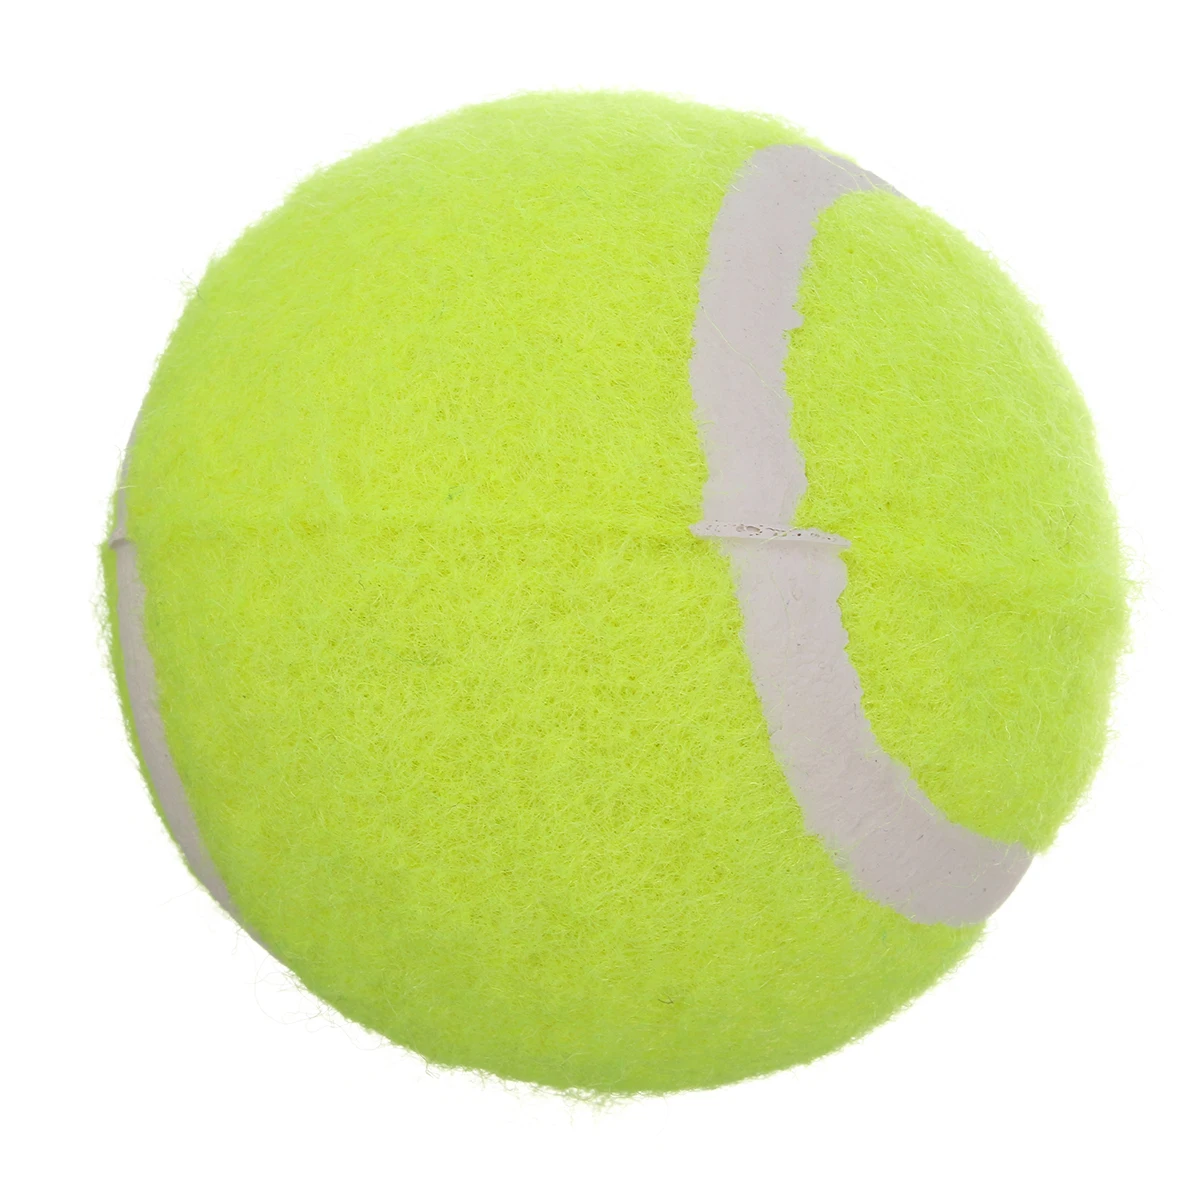 Nicrew игрушка для собак, автоматическая Интерактивная пусковая установка для мяча, теннисный мяч, выкатывается машина, запуск, извлечение мячей, инструмент для тренировки собак